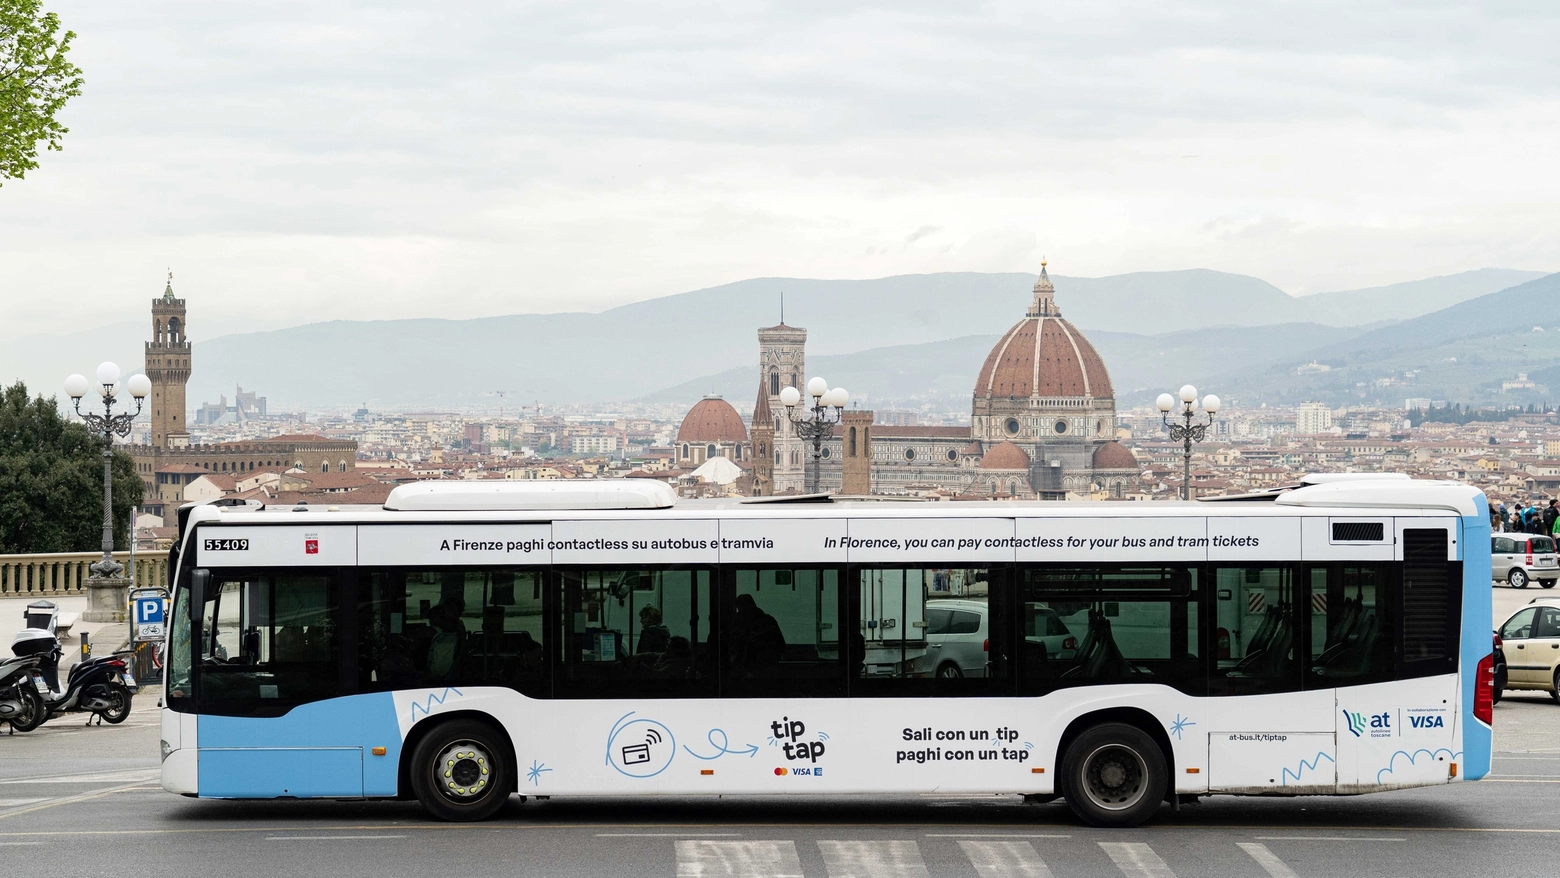 Dal 28 marzo sugli autobus urbani ed extraurbani della Toscana e sulla tramvia di Firenze si può comprare il biglietto a bordo, senza sovrapprezzo, con la carta di credito